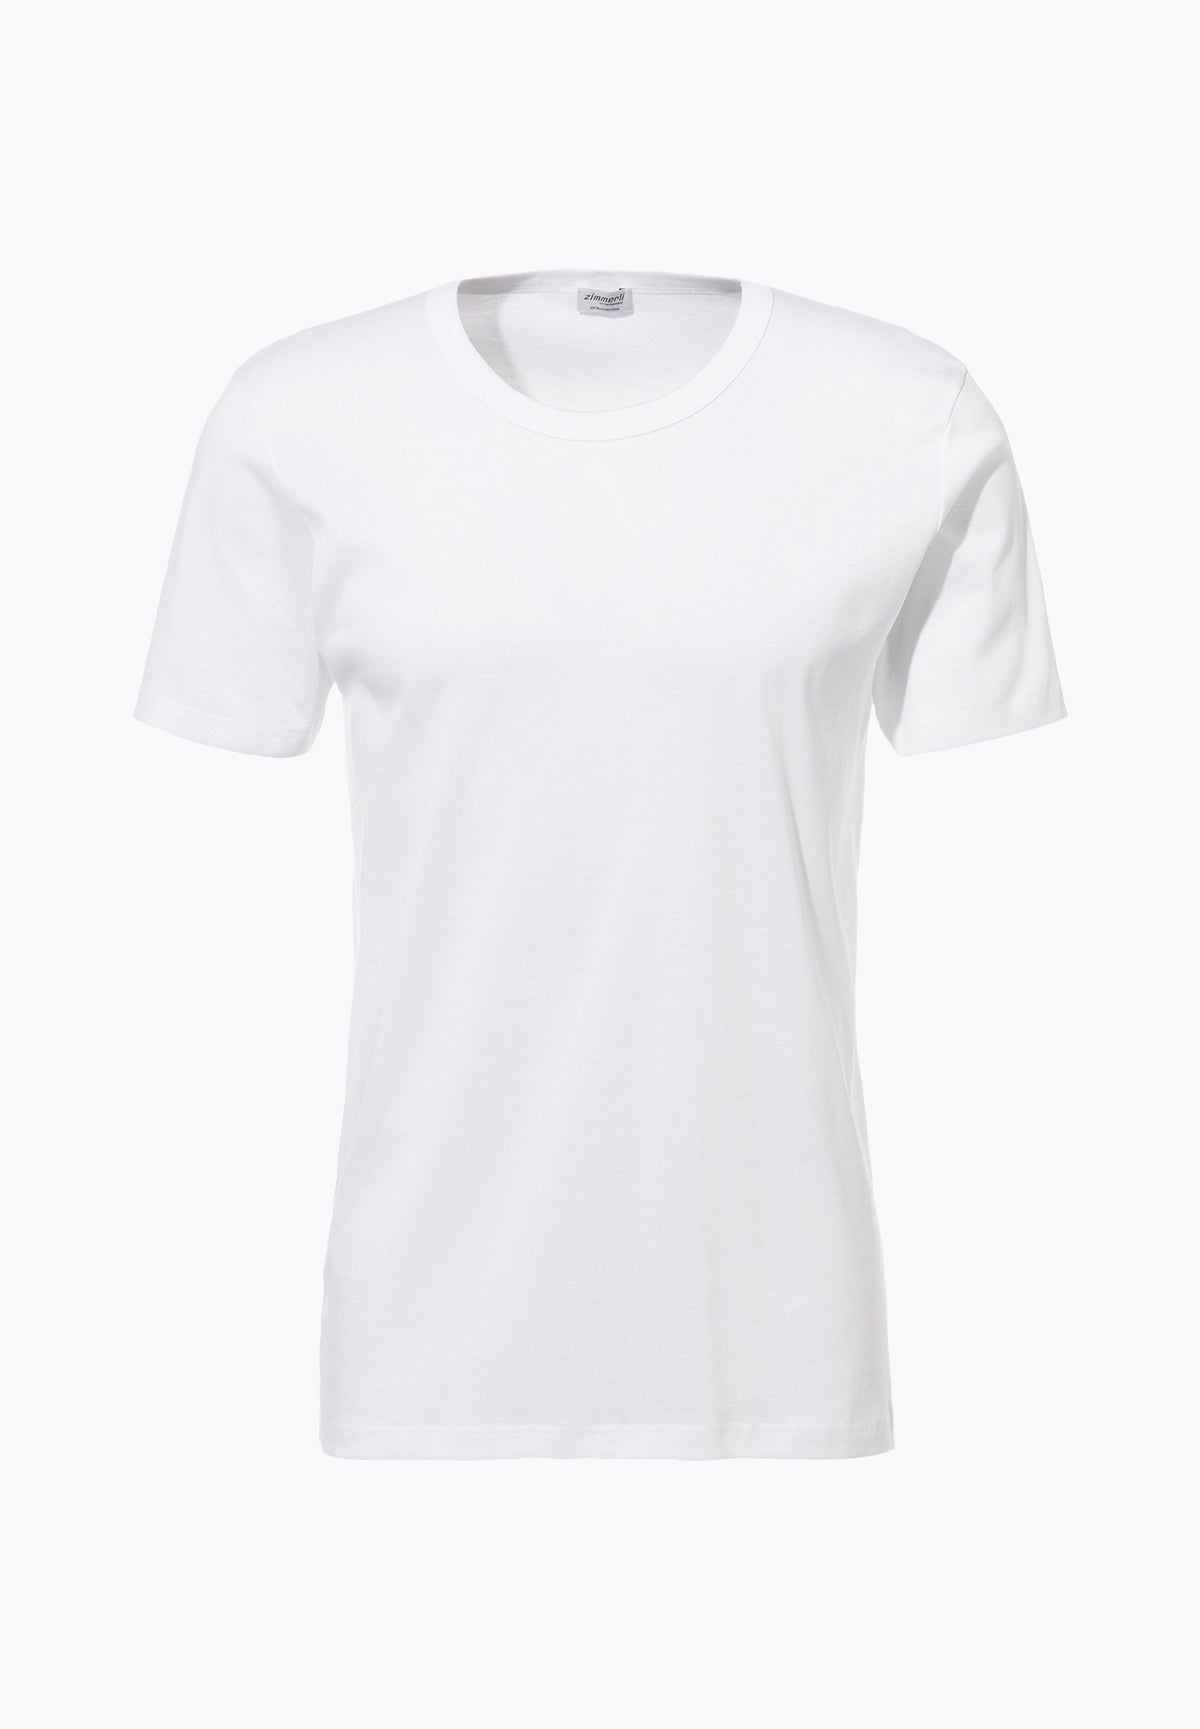 Business Class | T-Shirt Short Sleeve - white